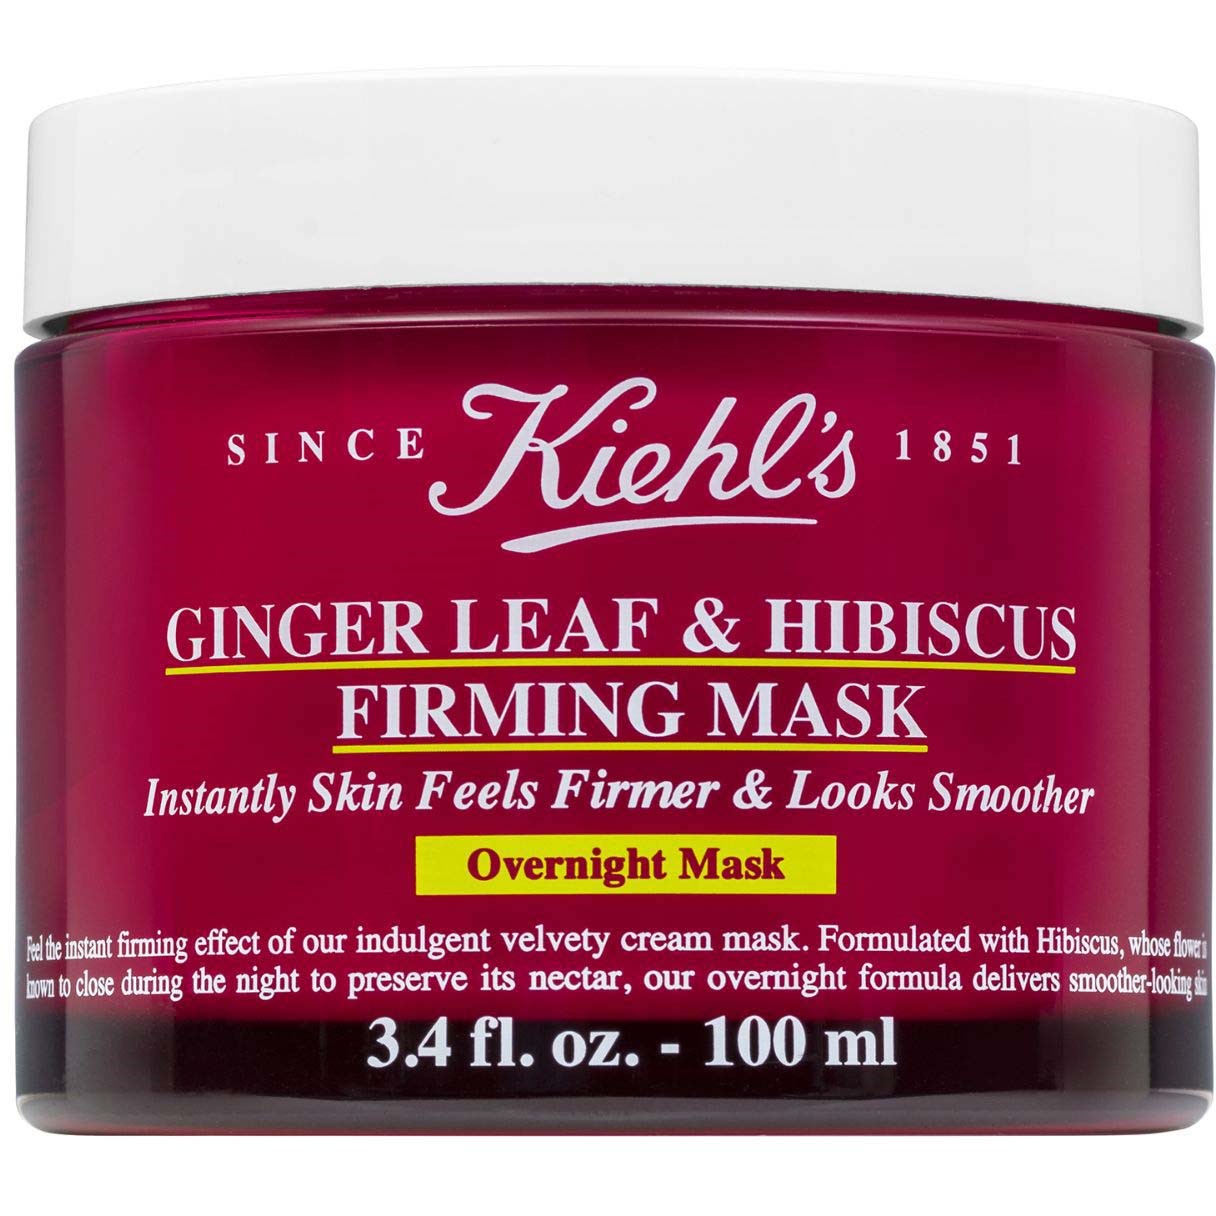 Bilde av Kiehl's Ginger Leaf & Hibiscus Firming Mask 100 Ml